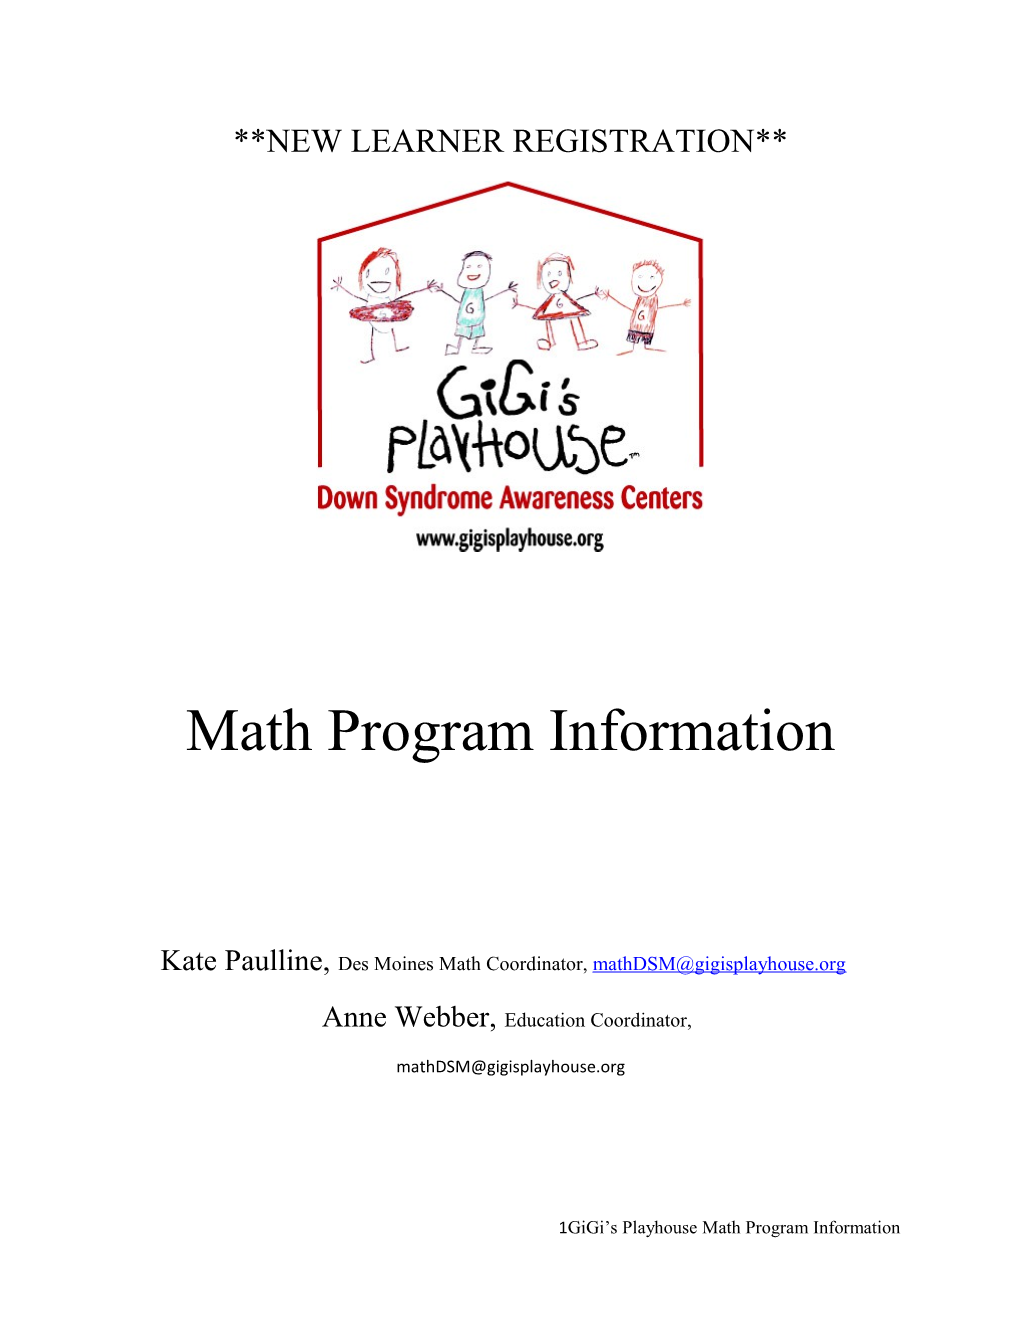 Kate Paulline, Des Moines Math Coordinator